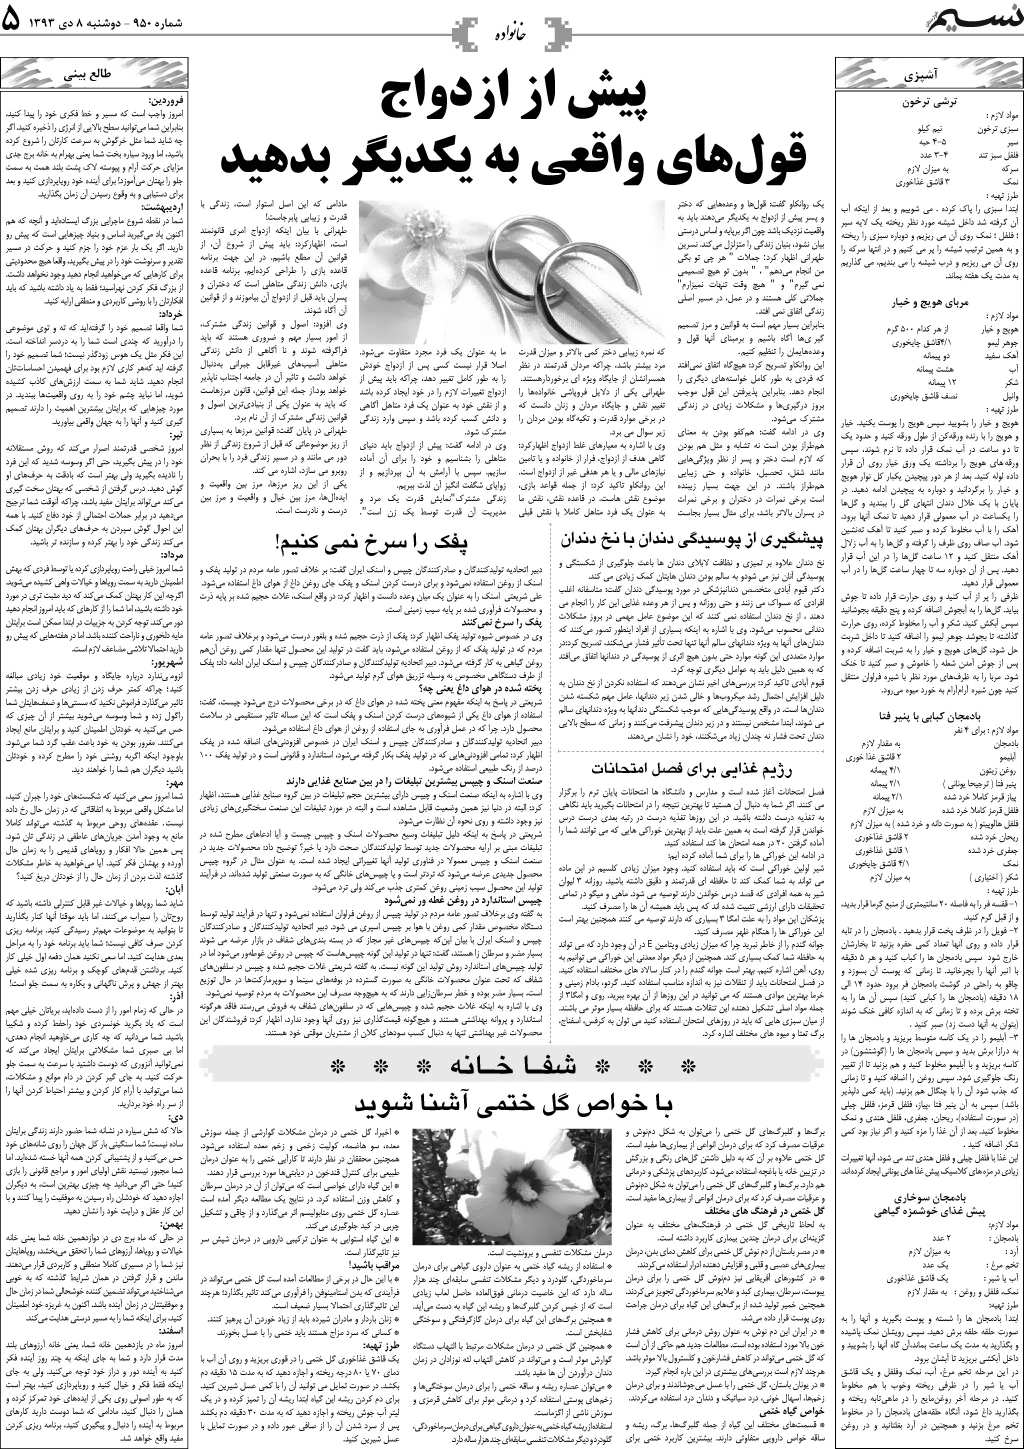 صفحه خانواده روزنامه نسیم شماره 950